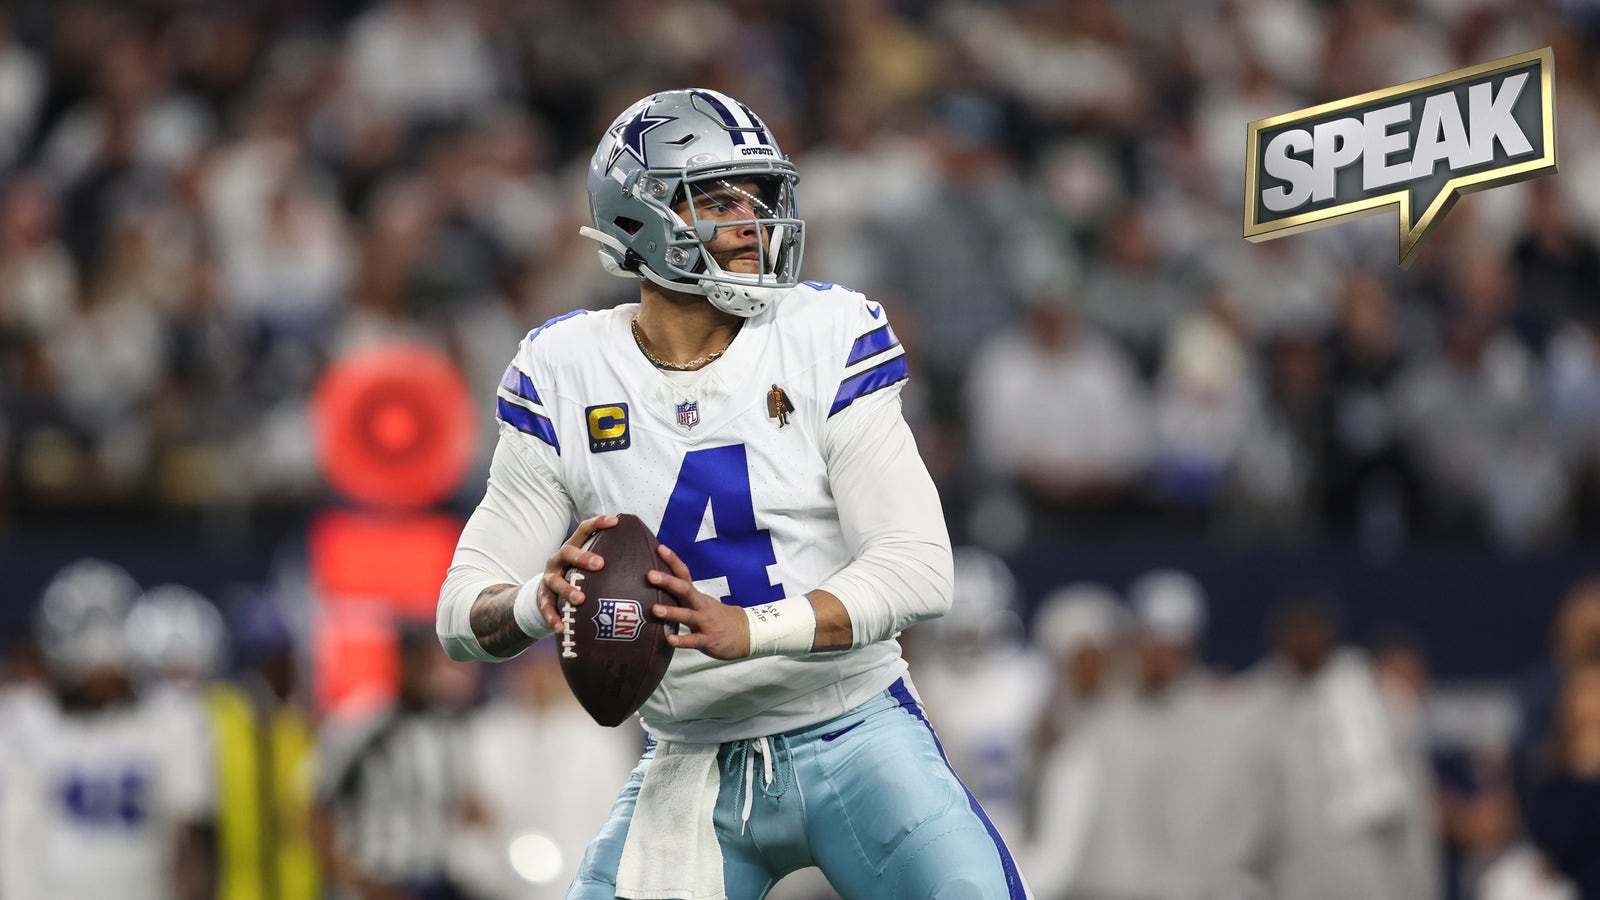 Should the Cowboys extend Dak Prescott?